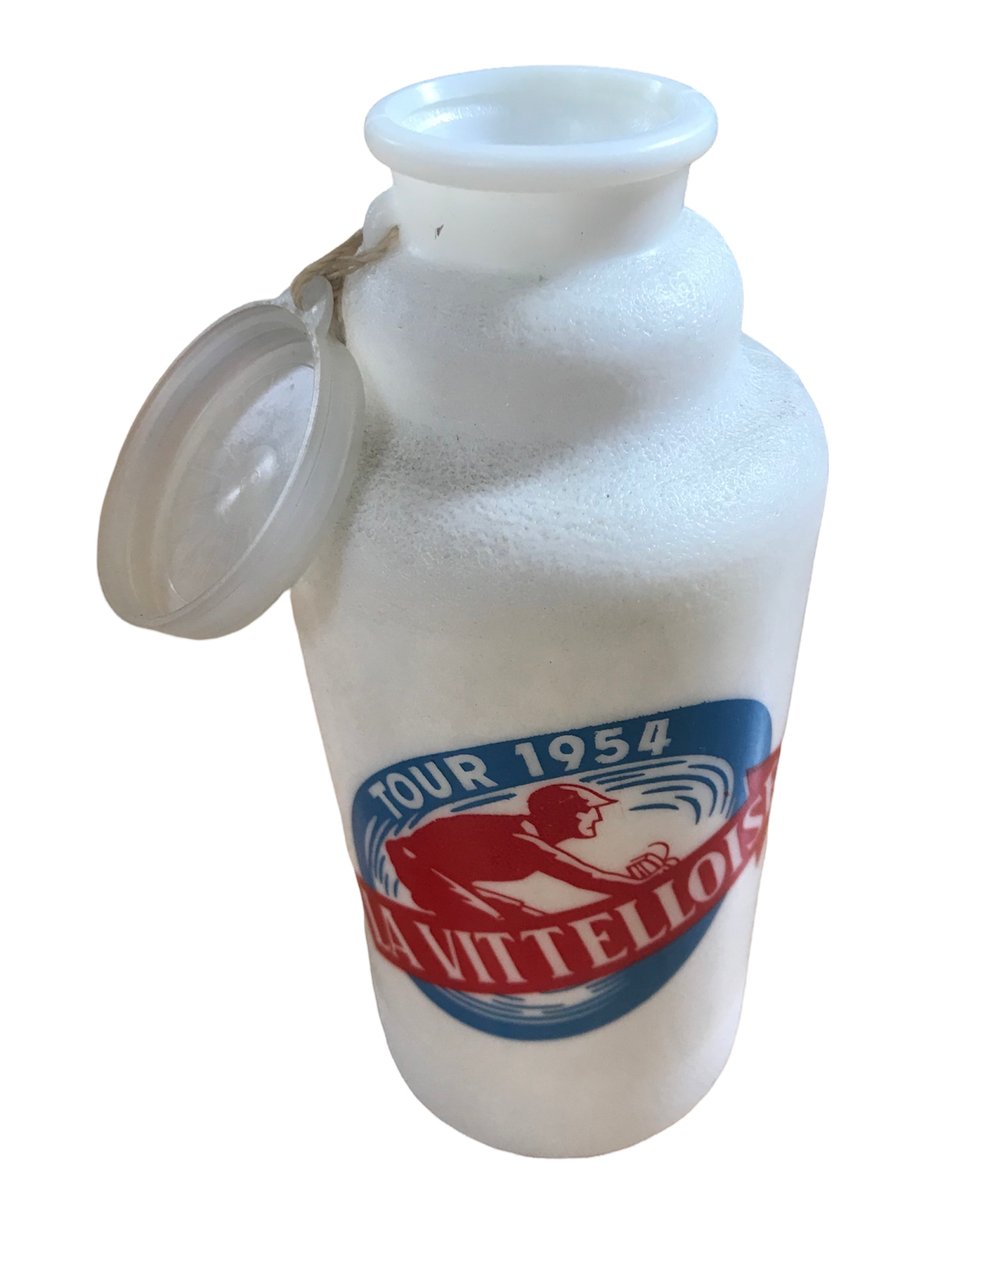 Vintage NOS 1954 ðŸ‡«ðŸ‡· Tour de France / La Vittelloise water bottle 